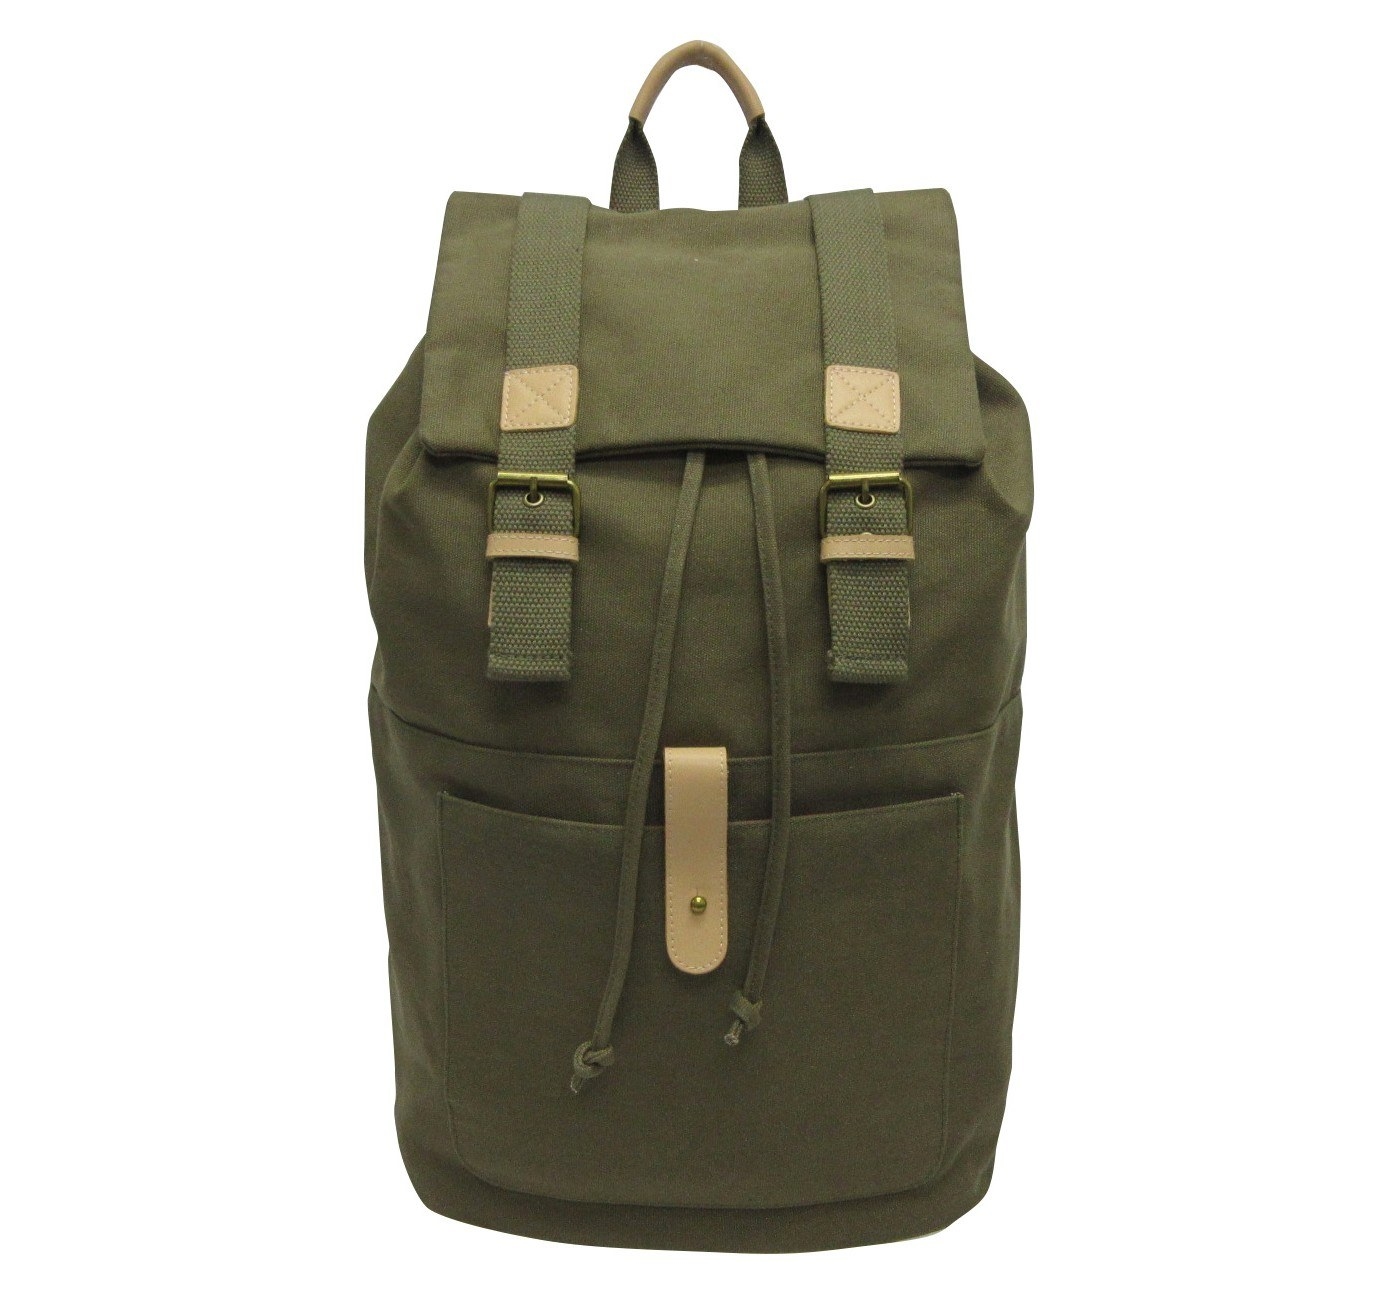 backpack online shop